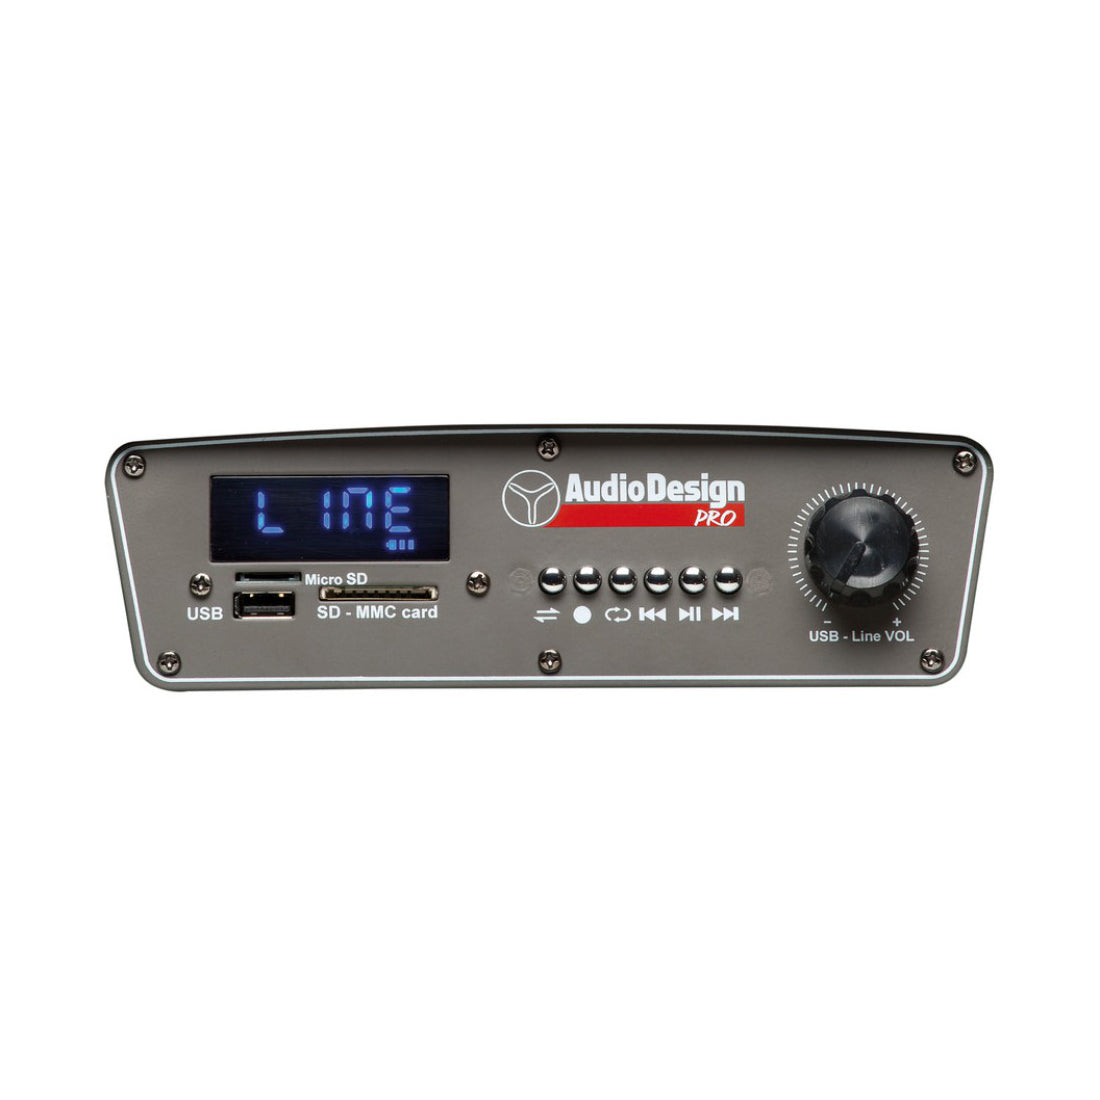 AudioDesign Pro M2 10W/L diffusore portatile, cassa portatile con woofer da 250 mm e 2 microfoni wireless